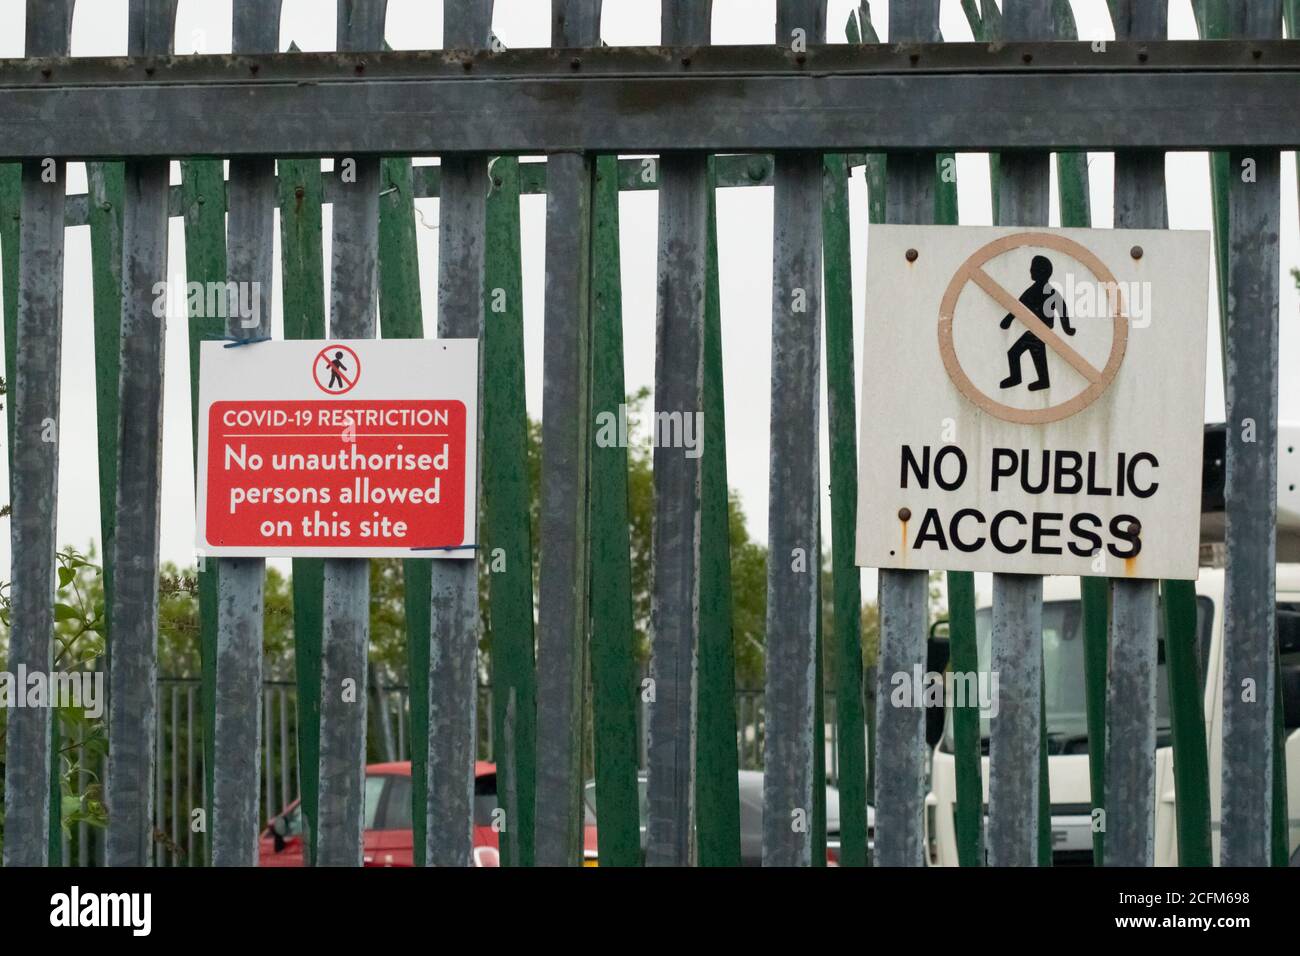 COVID-19 Einschränkung, keine unbefugten Personen auf dieser Website erlaubt, rote Zeichen, Warnung. Kein öffentlicher Zugang. England, Großbritannien Stockfoto